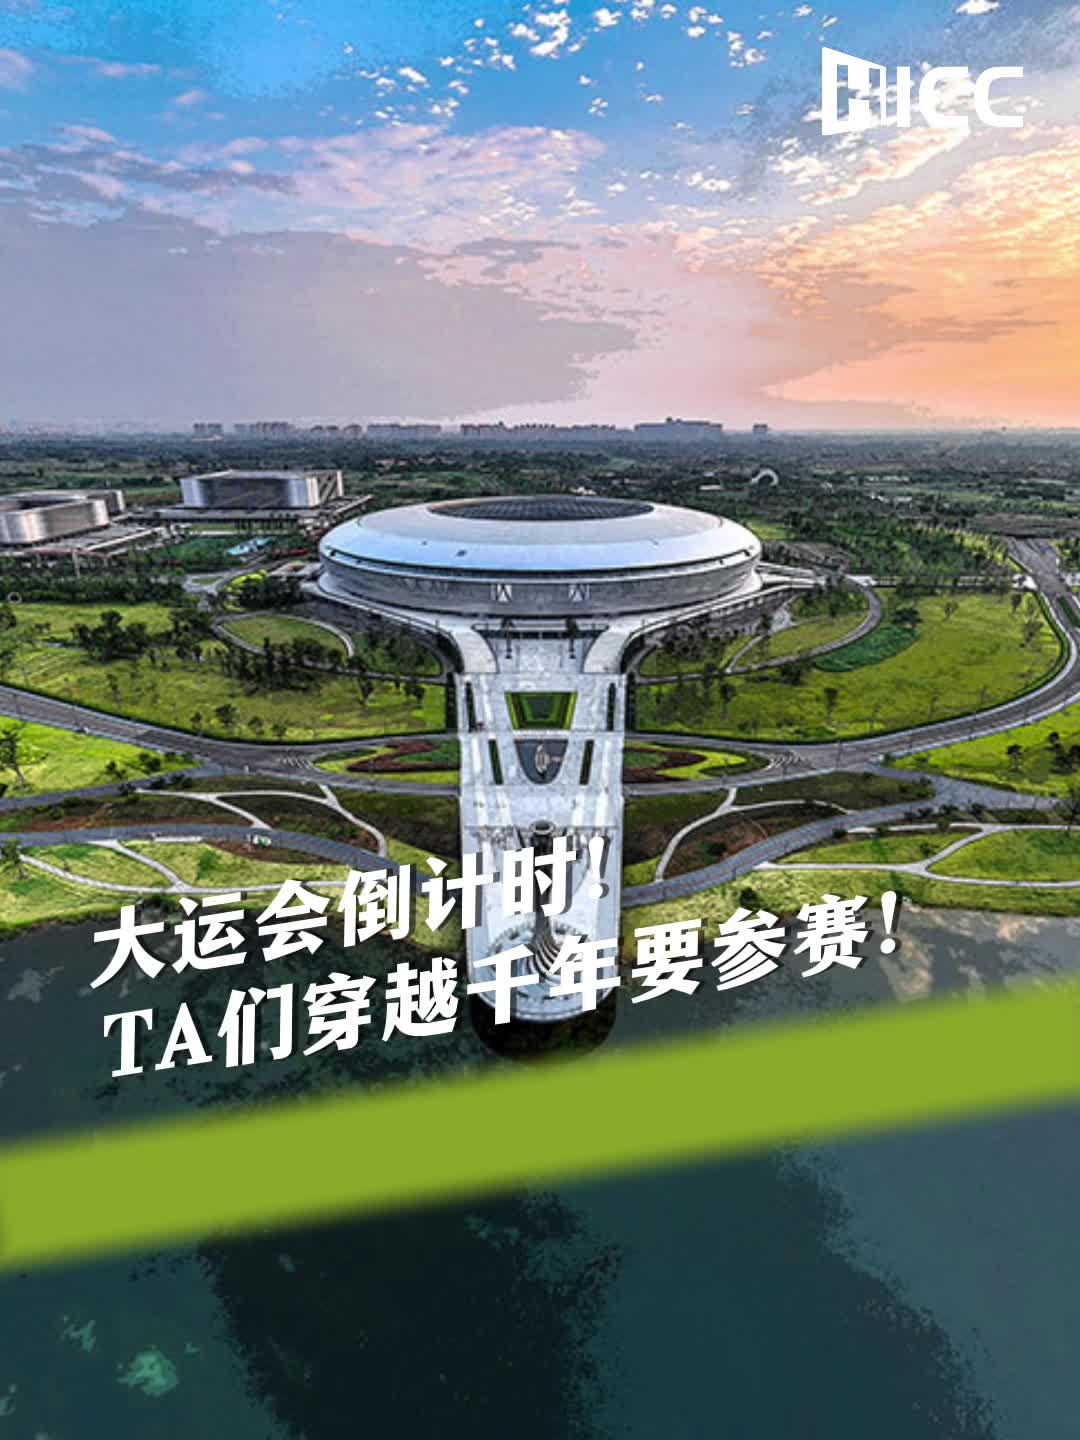 大运会倒计时！TA们穿越千年要参赛！( The Chengdu FISU World University Games are coming up! Some time-travelers are joining the games!)